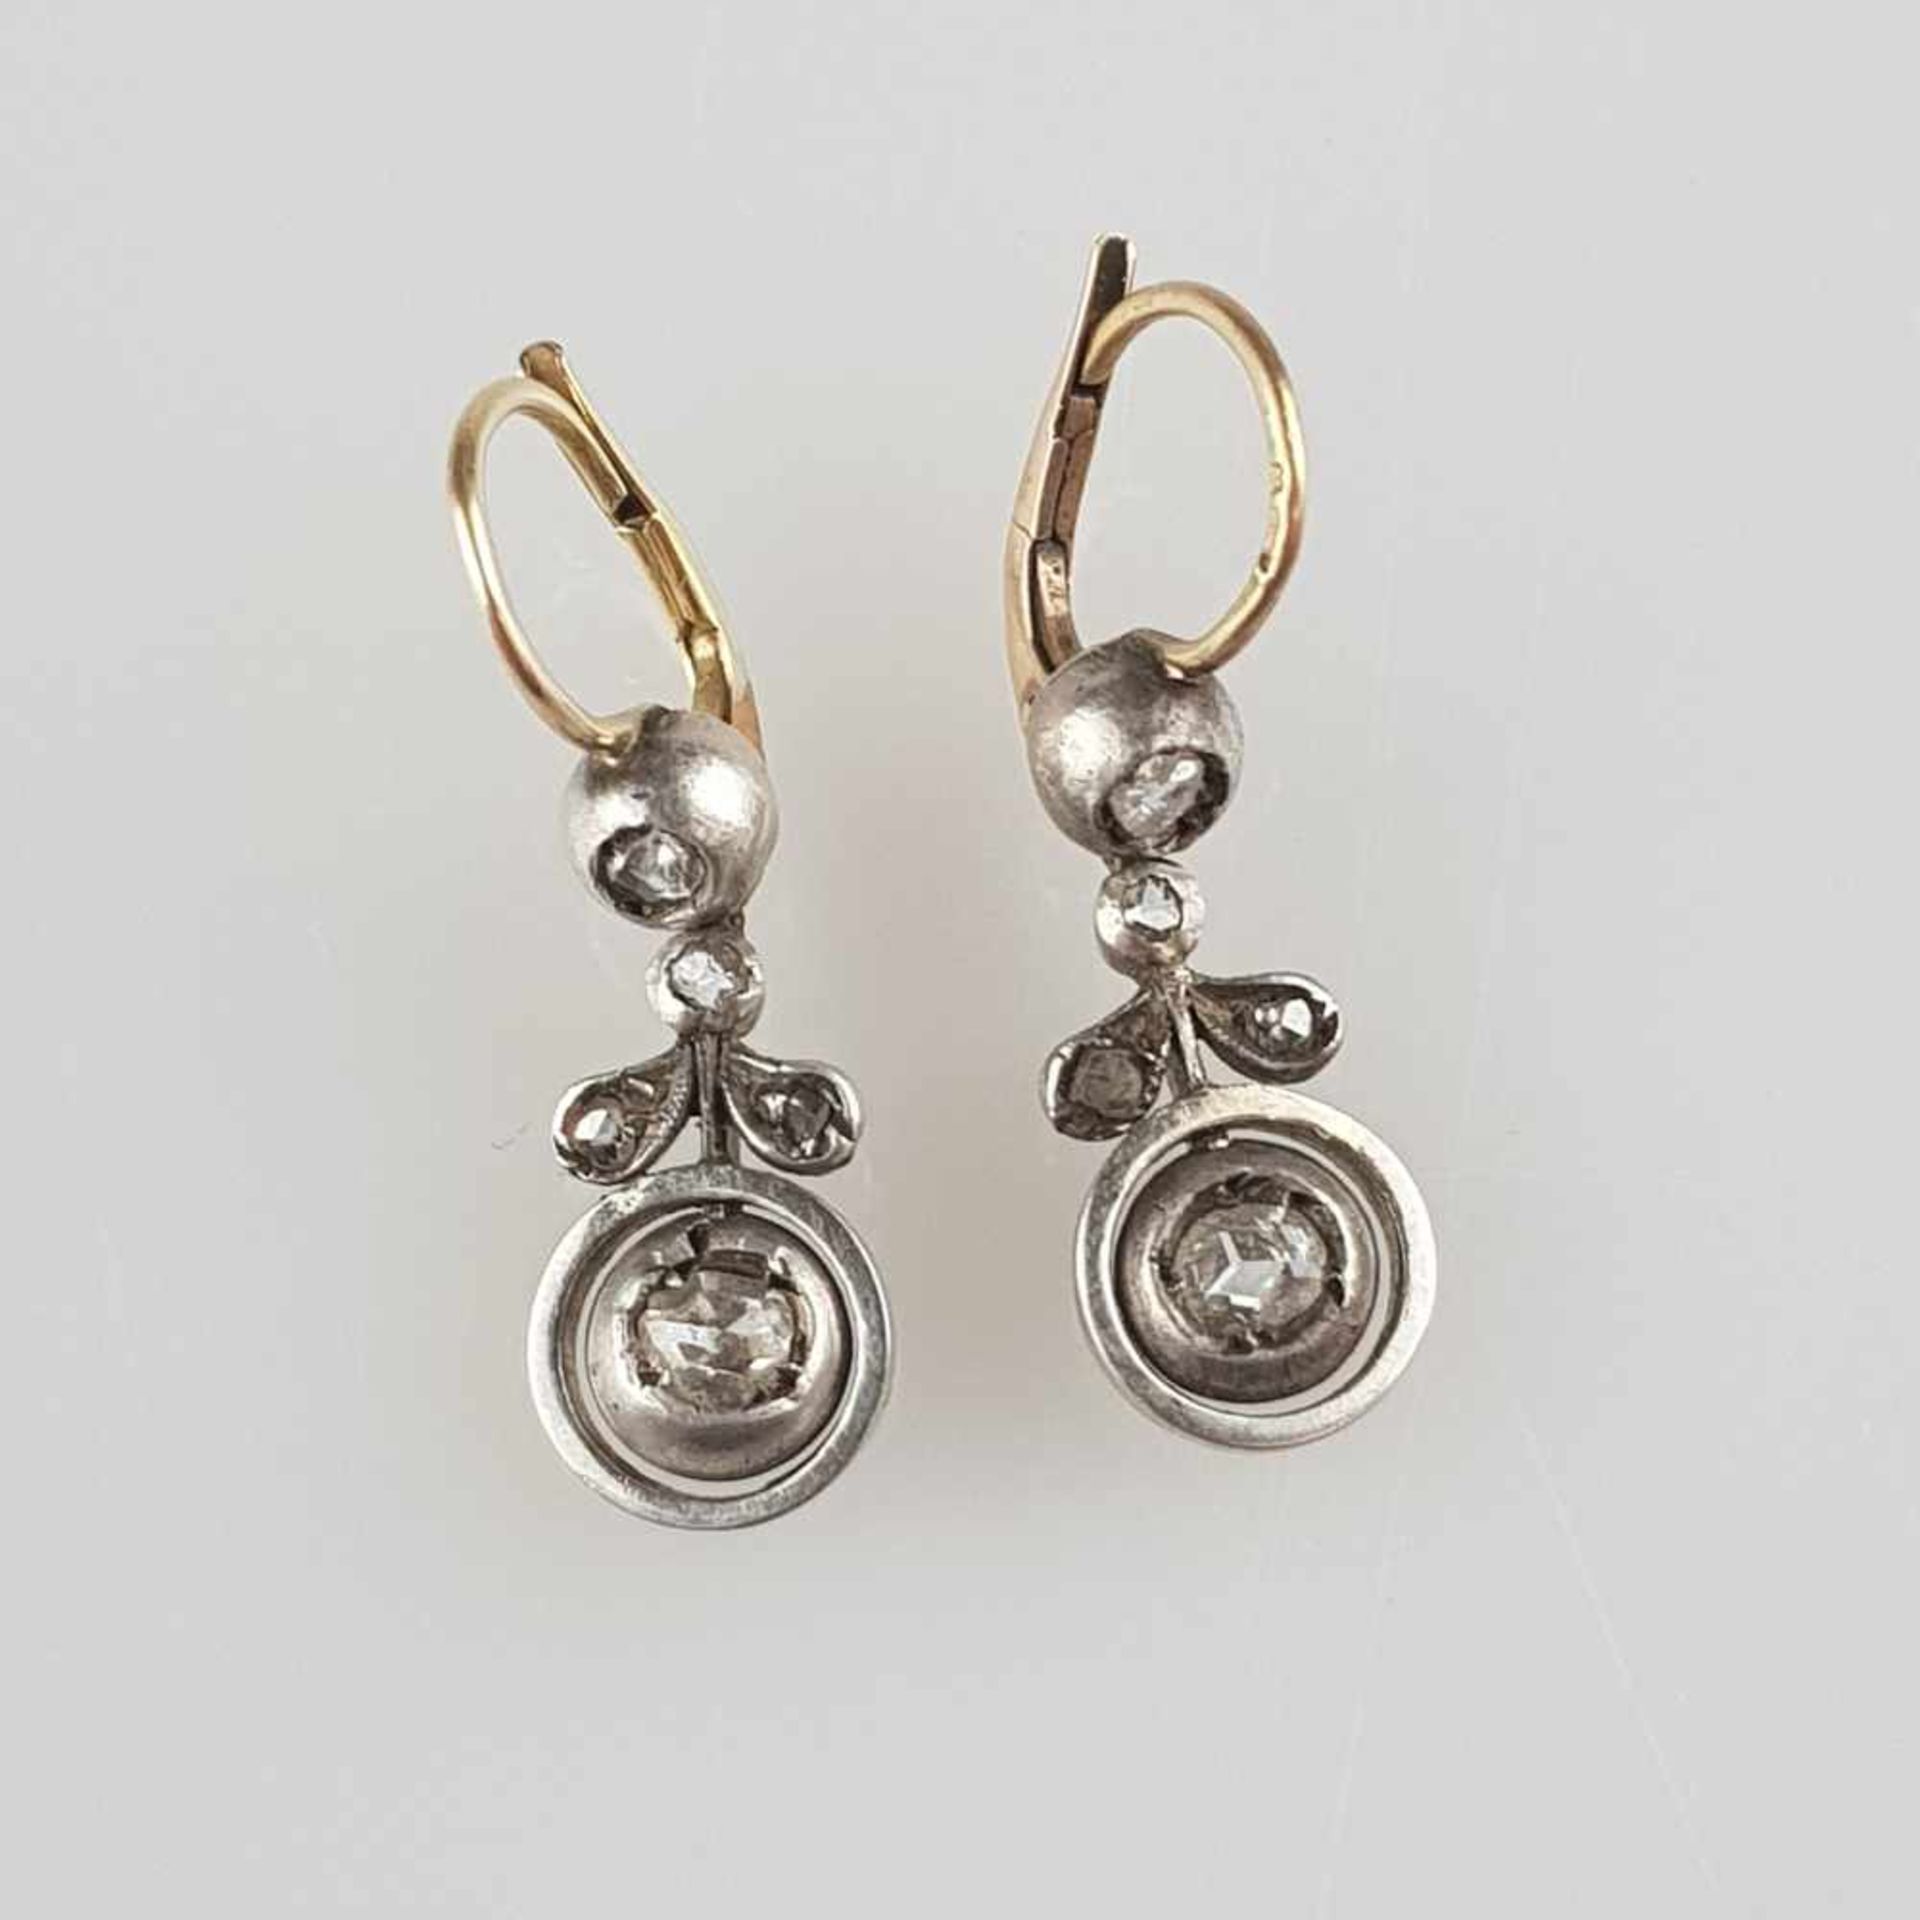 Paar filigrane Ohrhänger - England, 18.Jh., Gold auf Silber, Ohrhänger in Form von belaubten